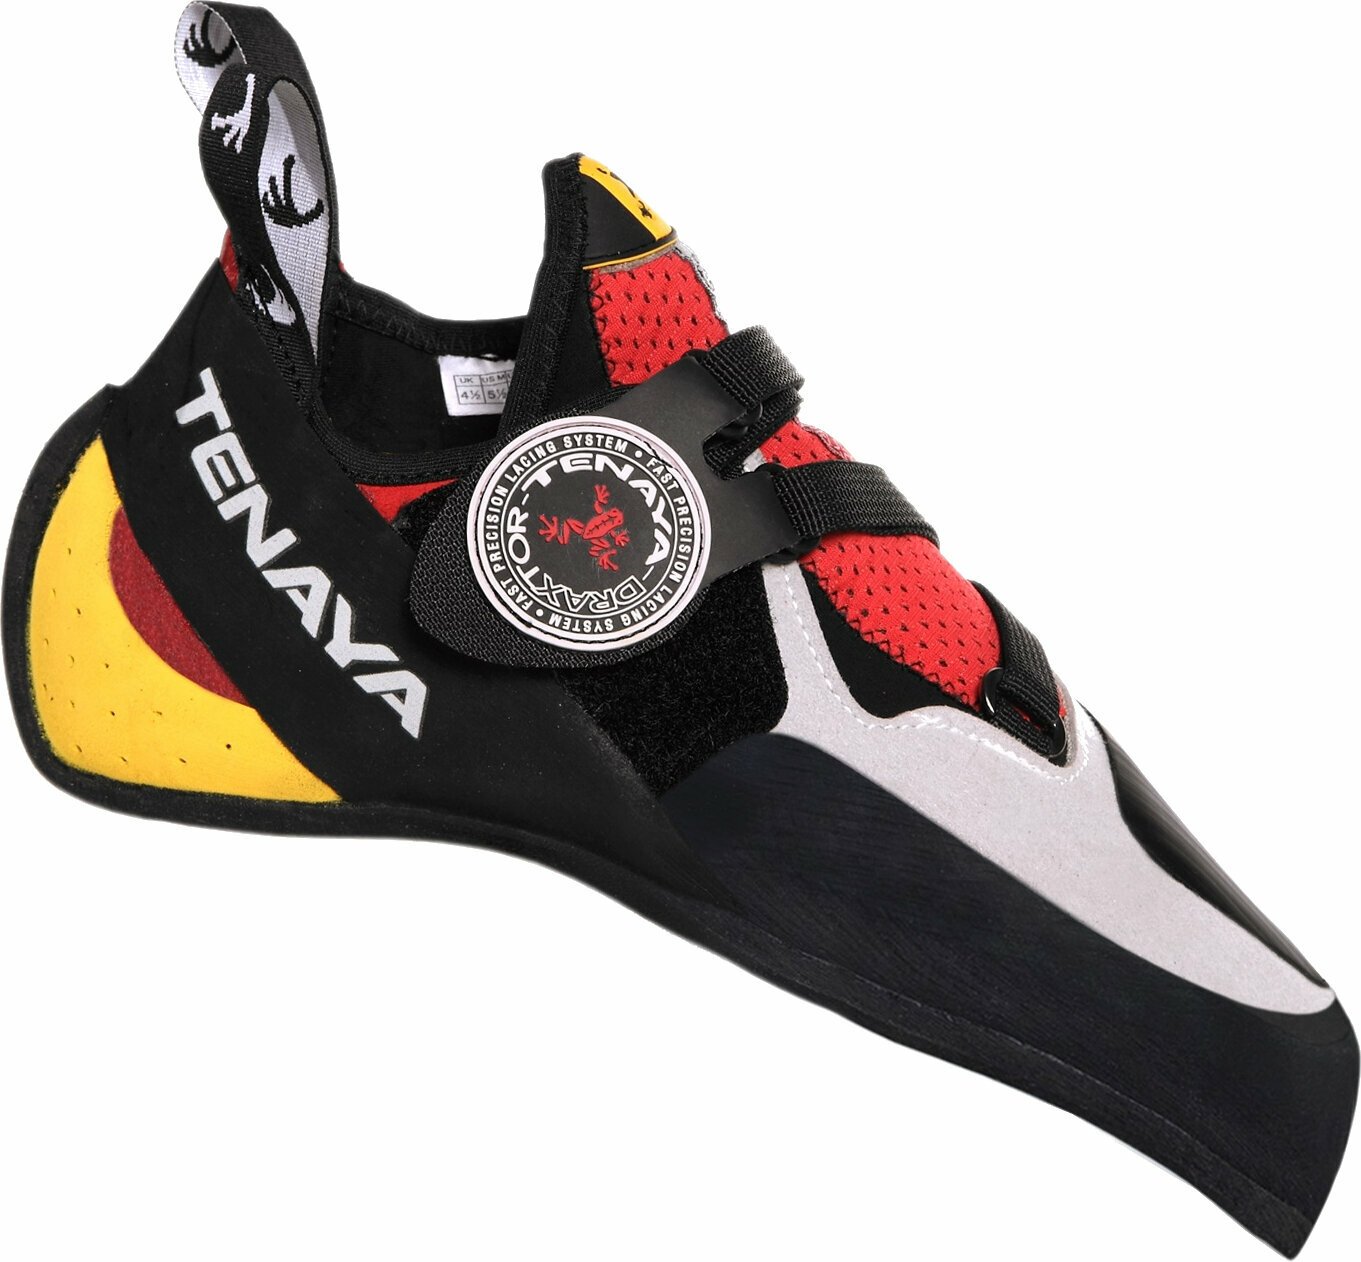 Παπούτσι αναρρίχησης Tenaya Iati Κόκκινο ( παραλλαγή ) 40,7 Παπούτσι αναρρίχησης